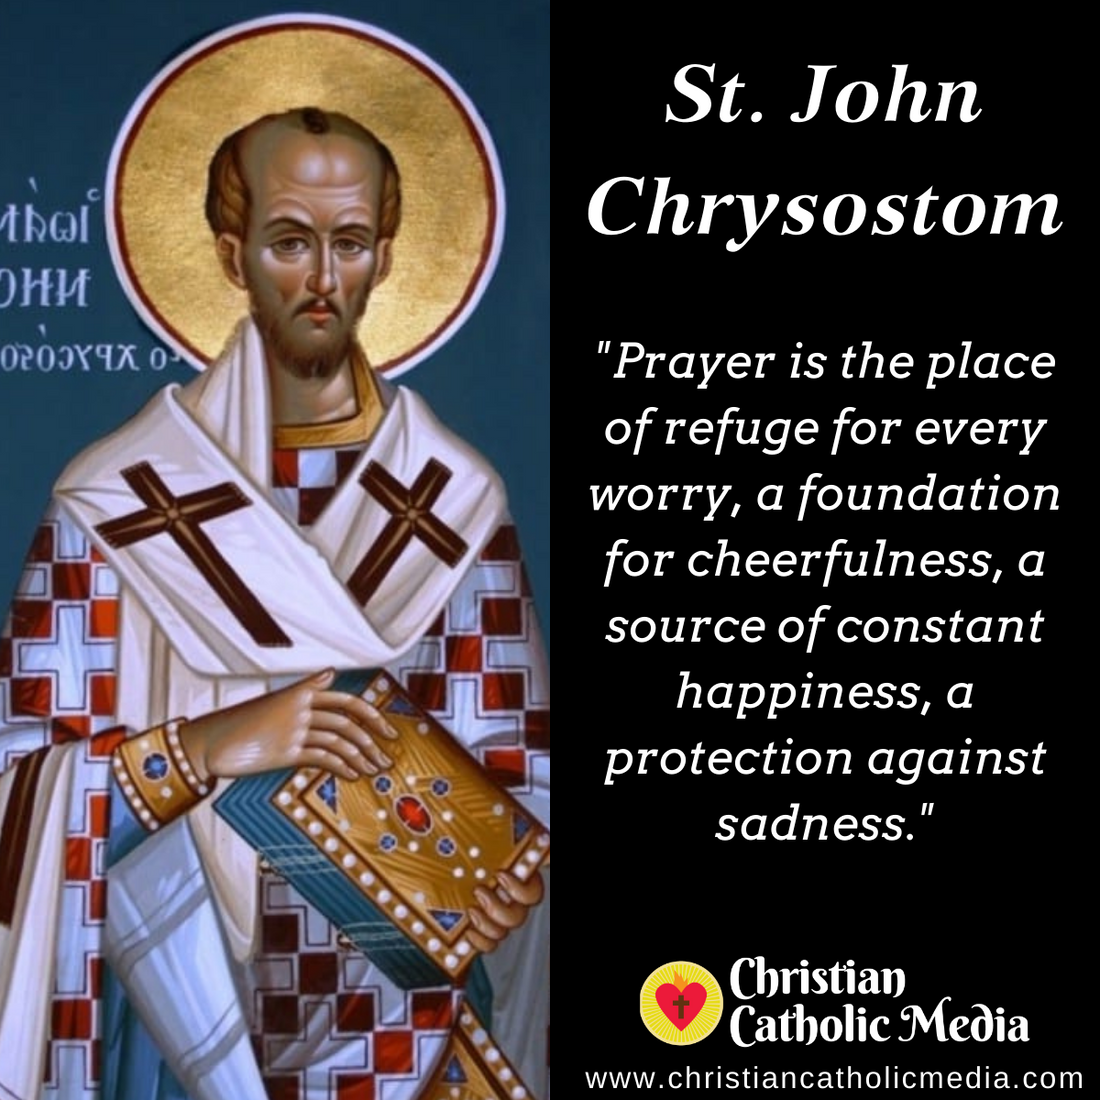 St. John Chrysostom - Monday September 13, 2021